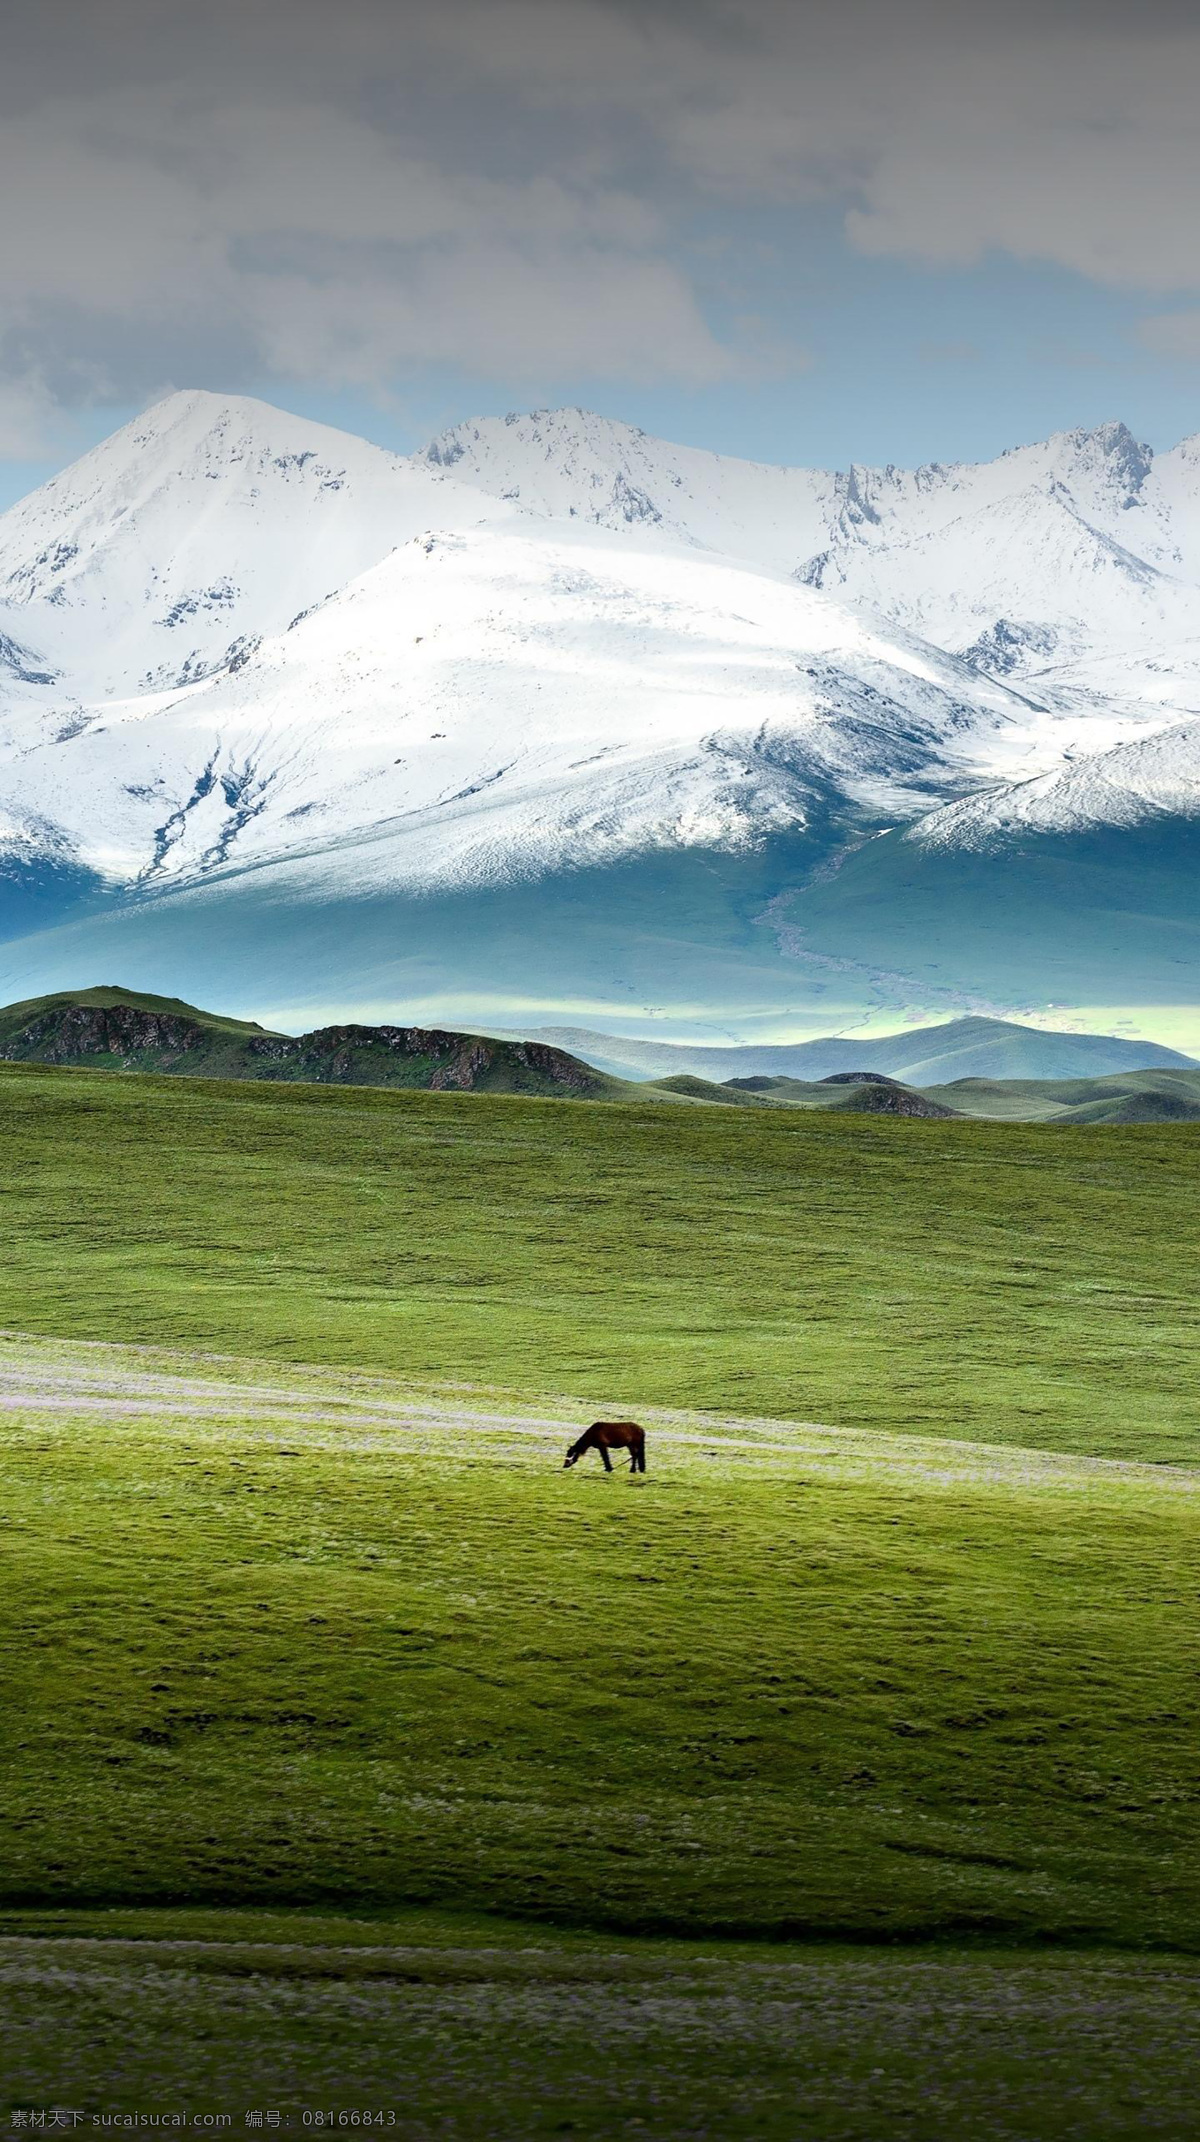 雪山 风景 草原 风景图片 摄影图片 自然景观 自然风景